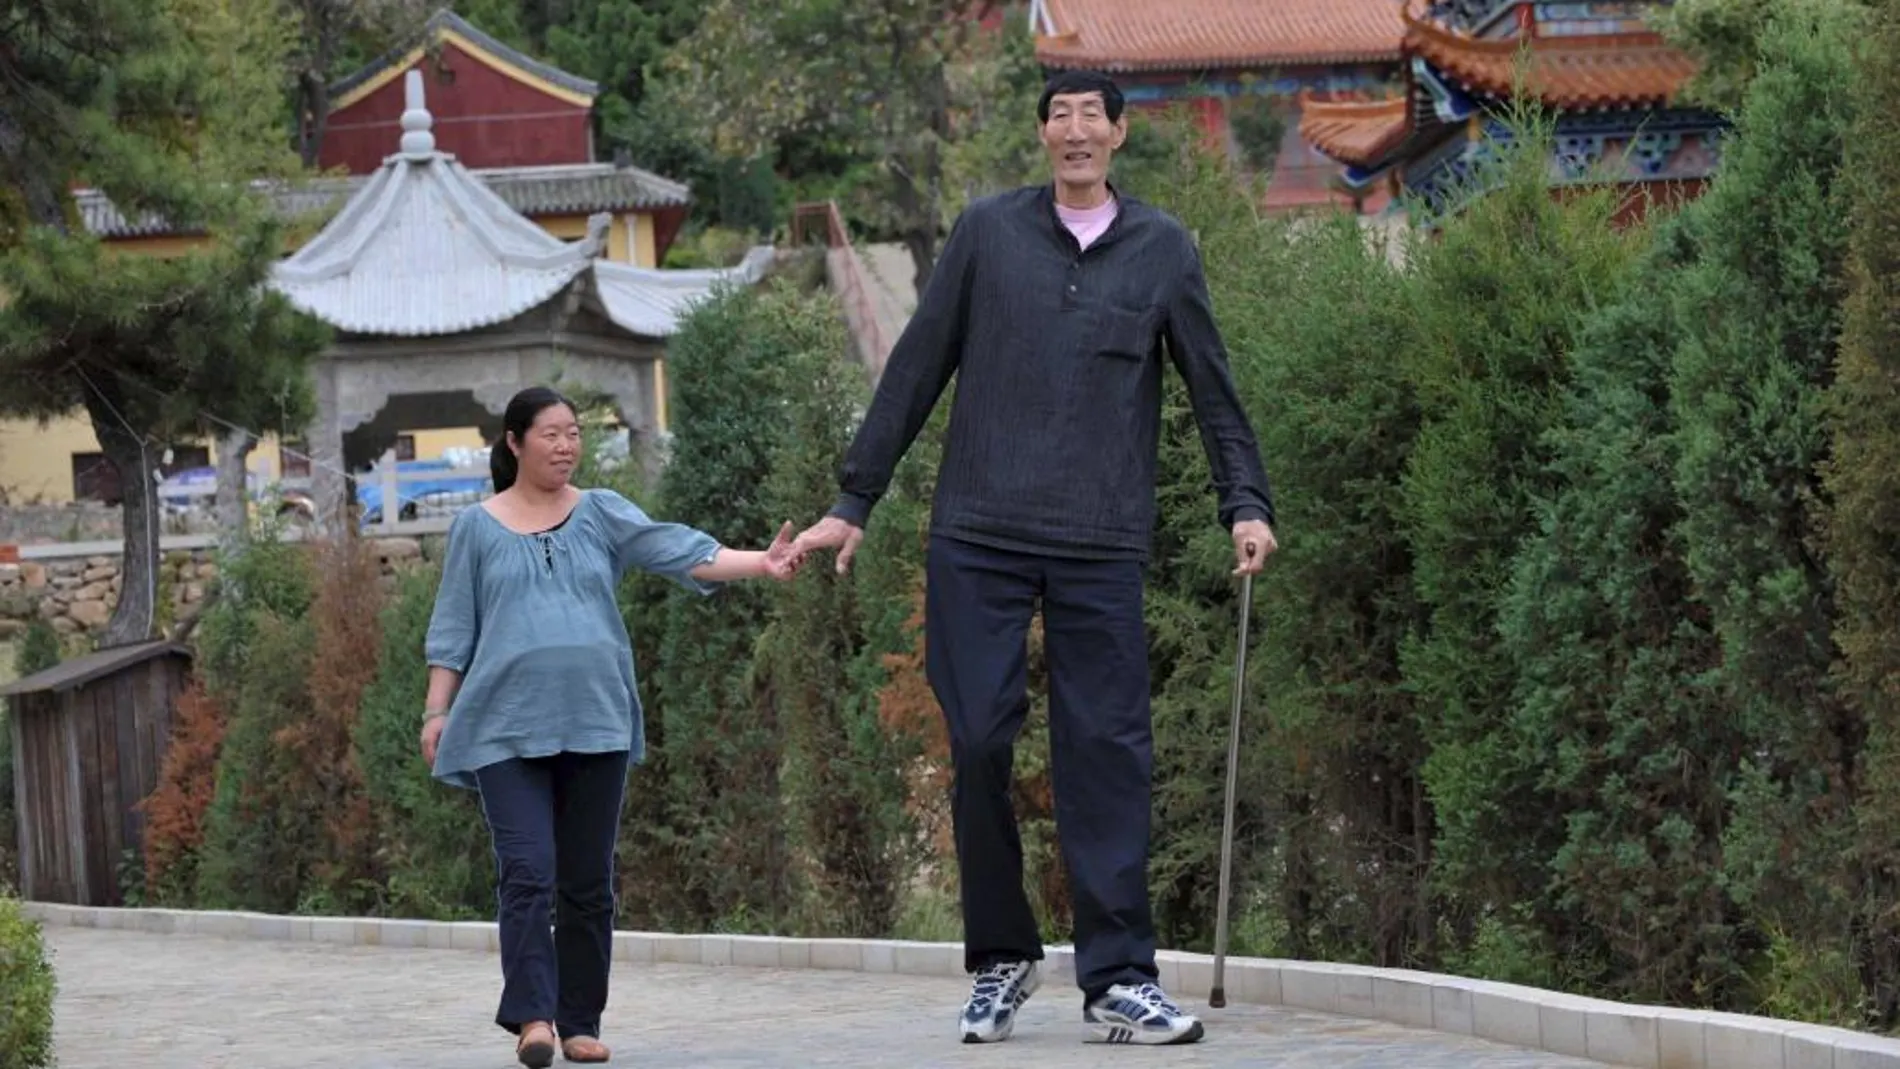 El chino Bao Xishun, reconocido en su momento como el hombre más alto del mundo